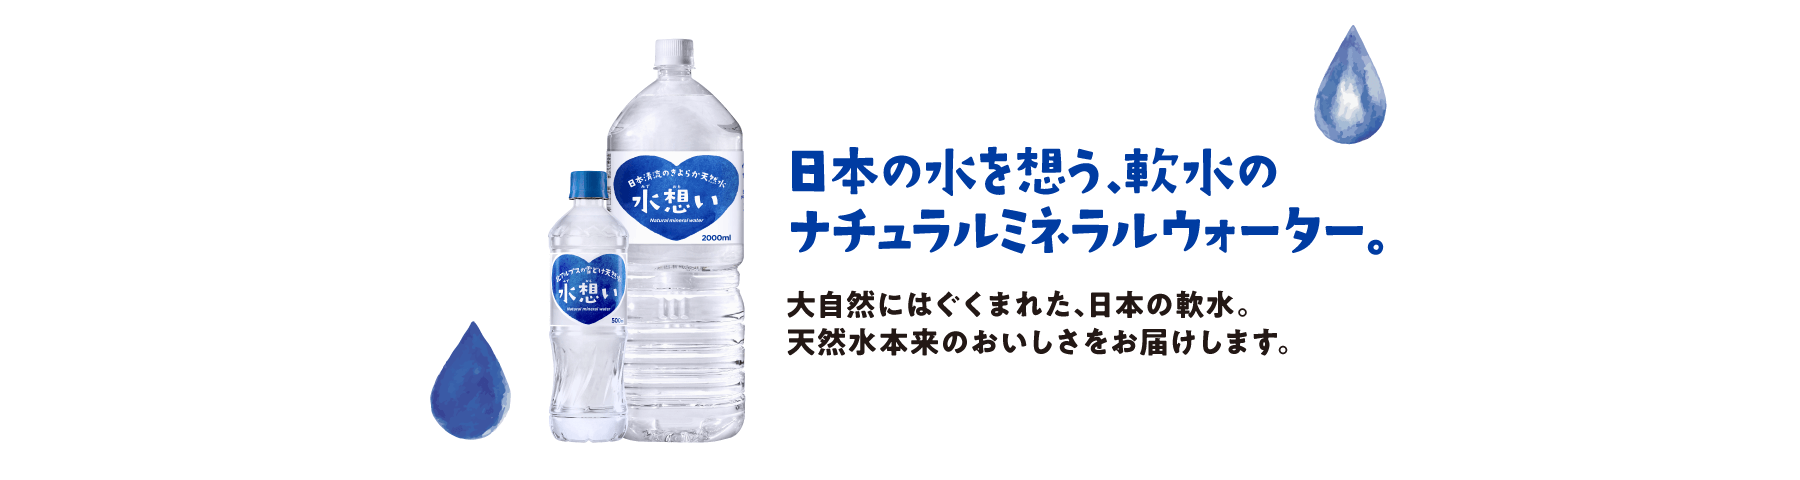 日本の水を想う、軟水のナチュラルミネラルウォーター。